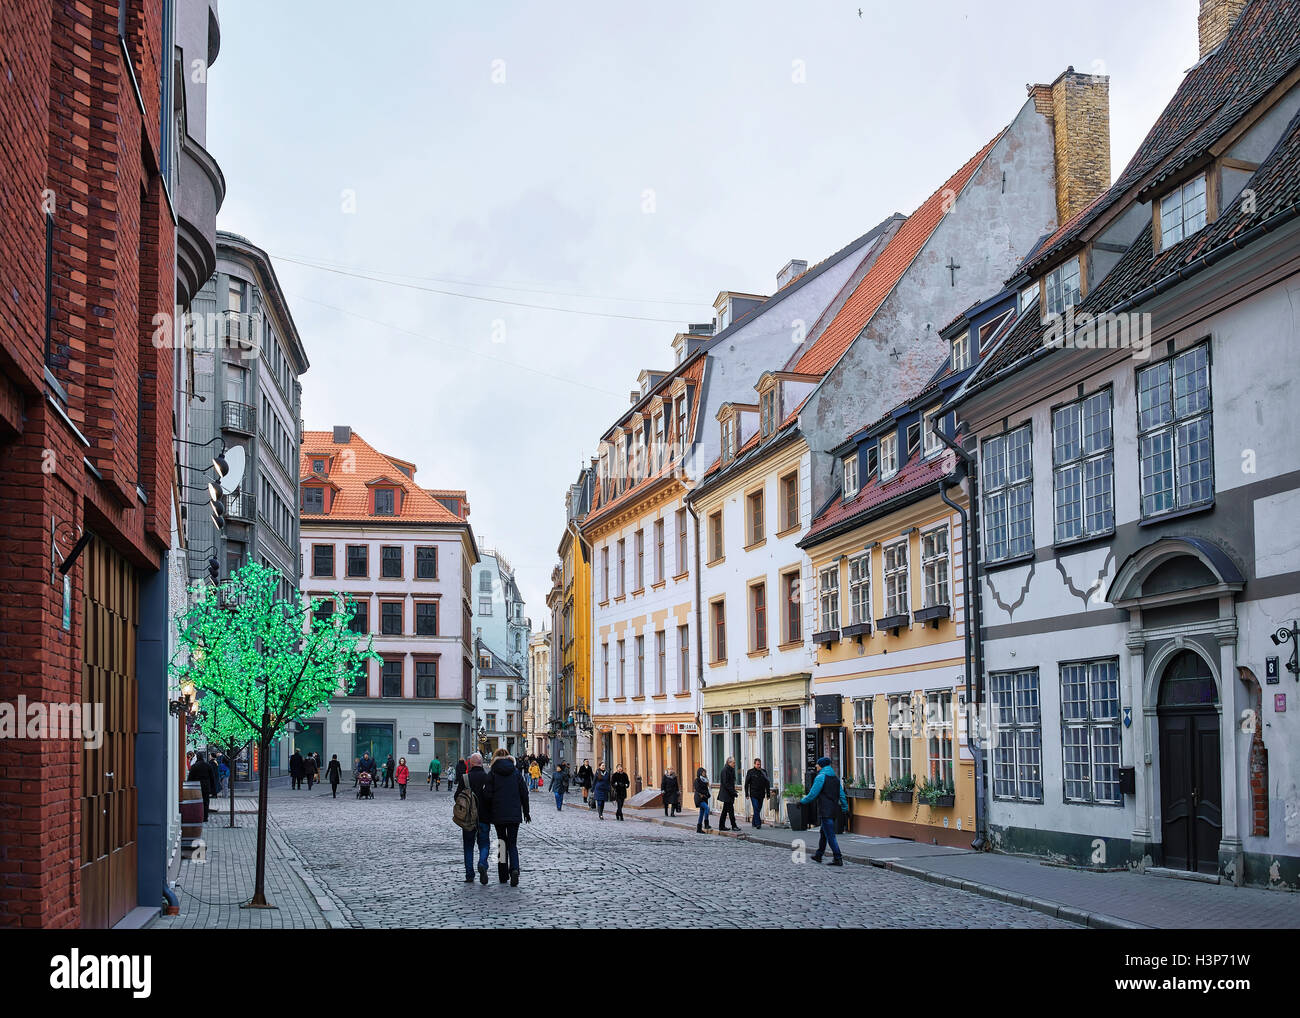 Riga, Lettland - 26. Dezember 2015: Menschen auf der Straße in der alten Stadt Riga, Hauptstadt Lettlands, an Weihnachten. Kein Schnee Stockfoto